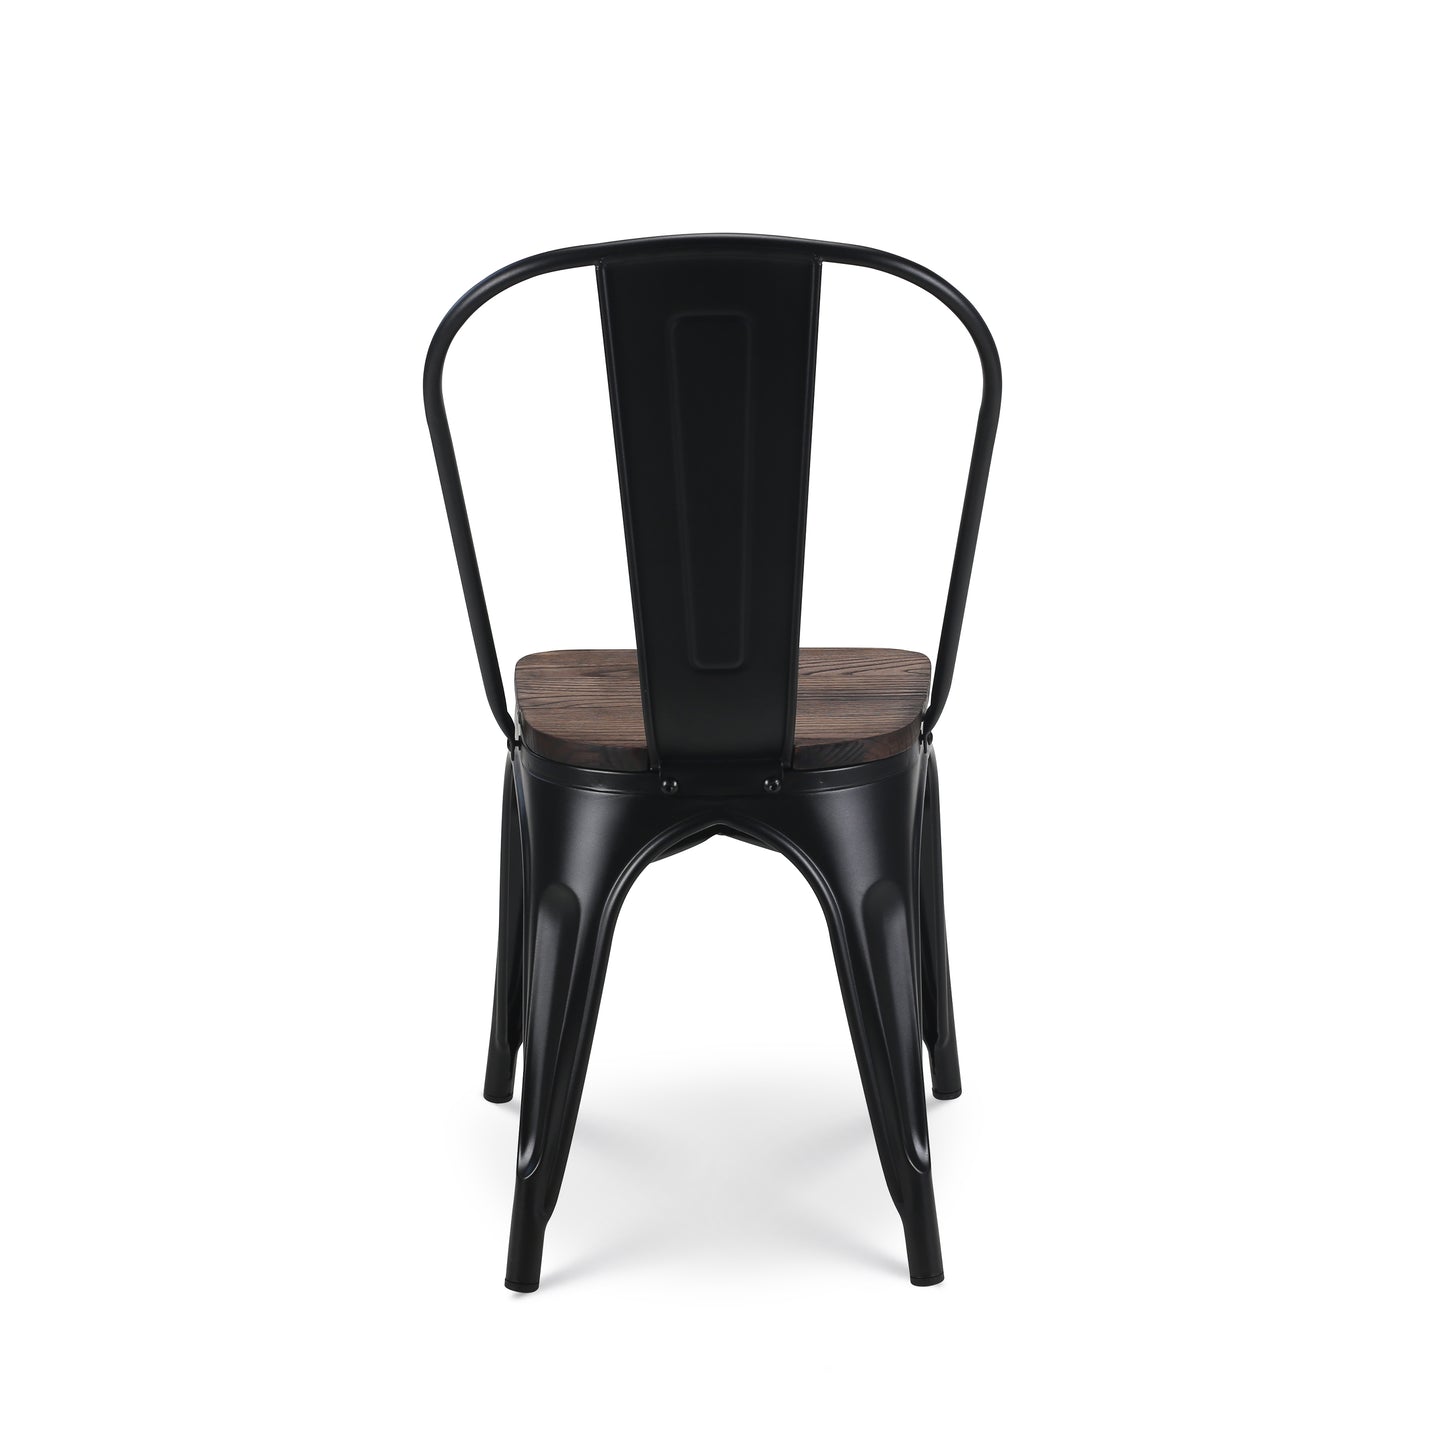 Lot de 4 chaises en métal noir mat et assise en bois foncé - Style industriel